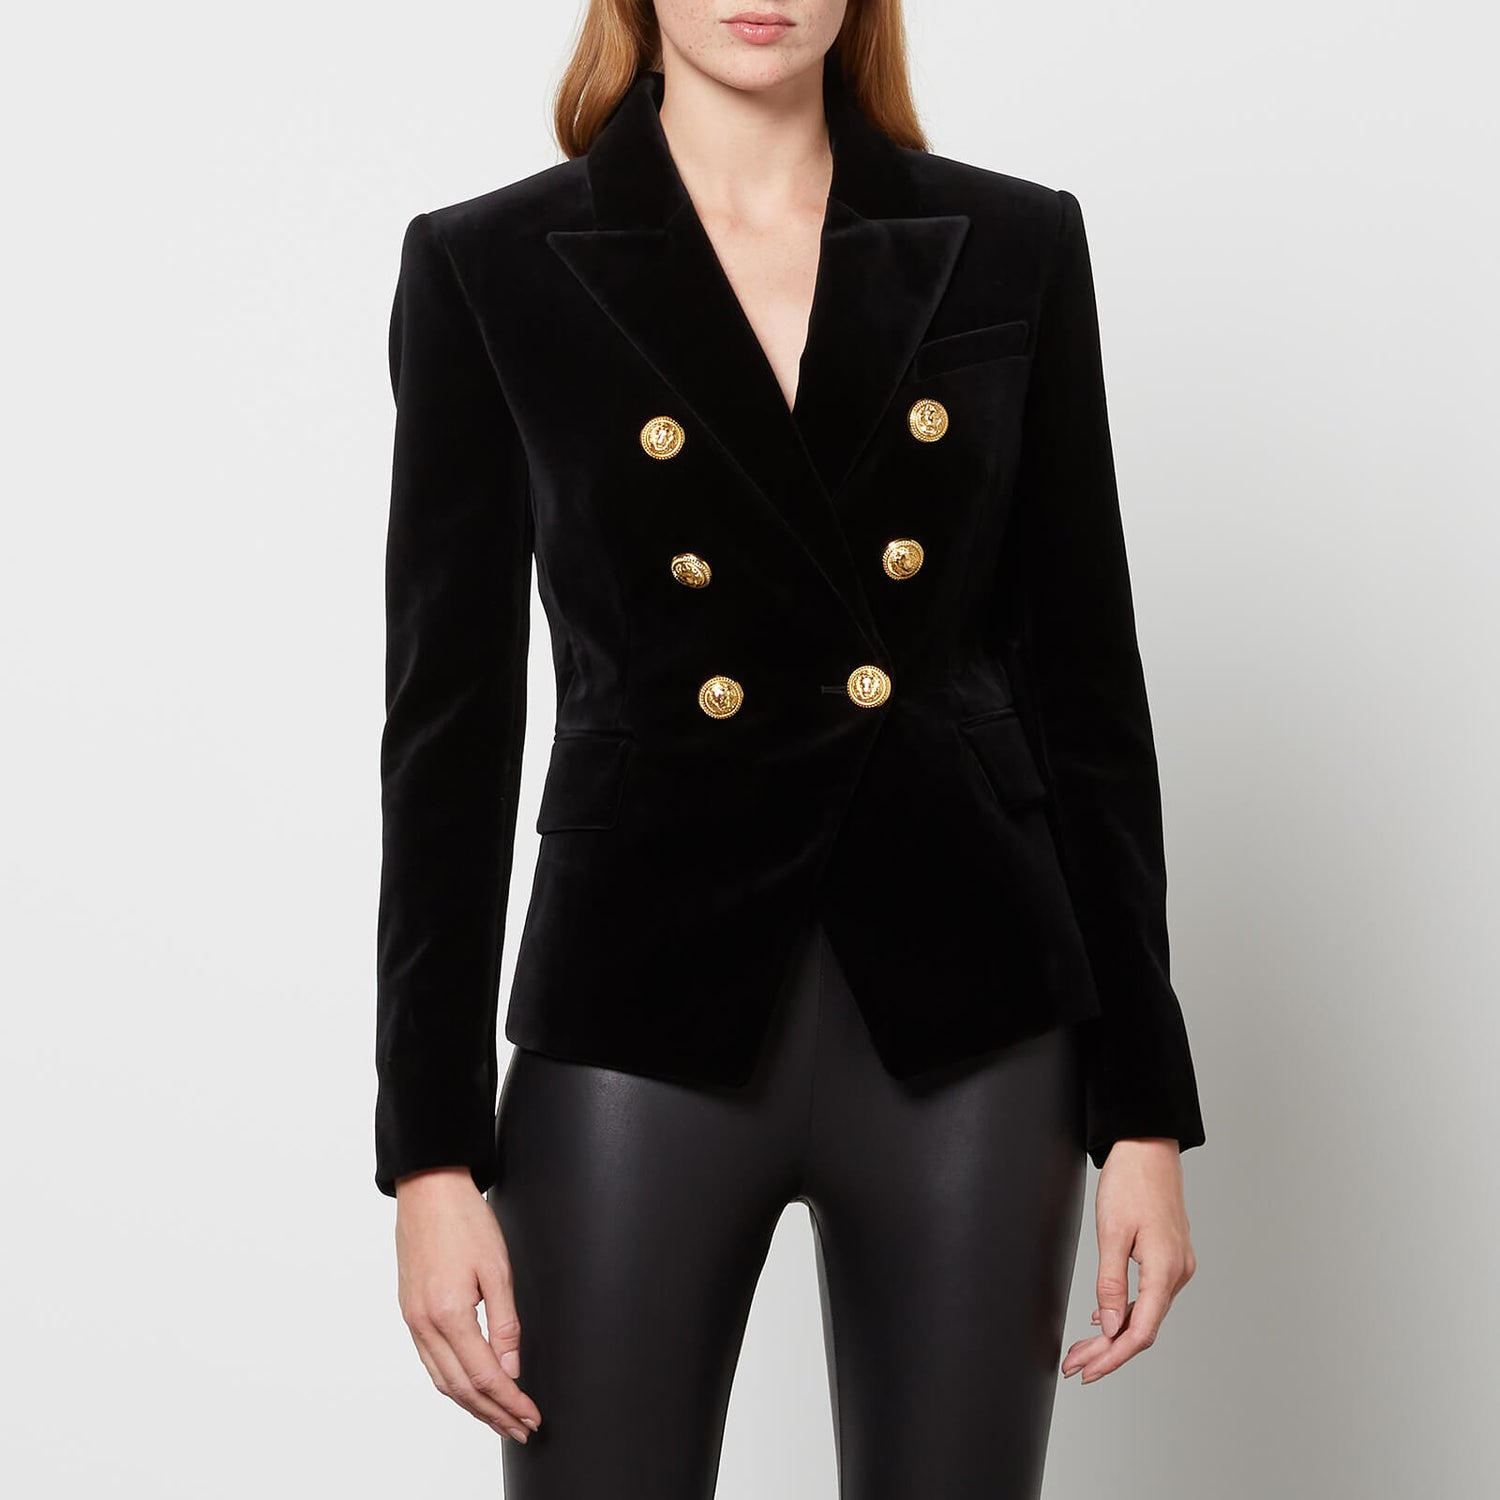 Balmain Women's 6 Buttoned Velvet Jacket - Black - FR 36/UK 8